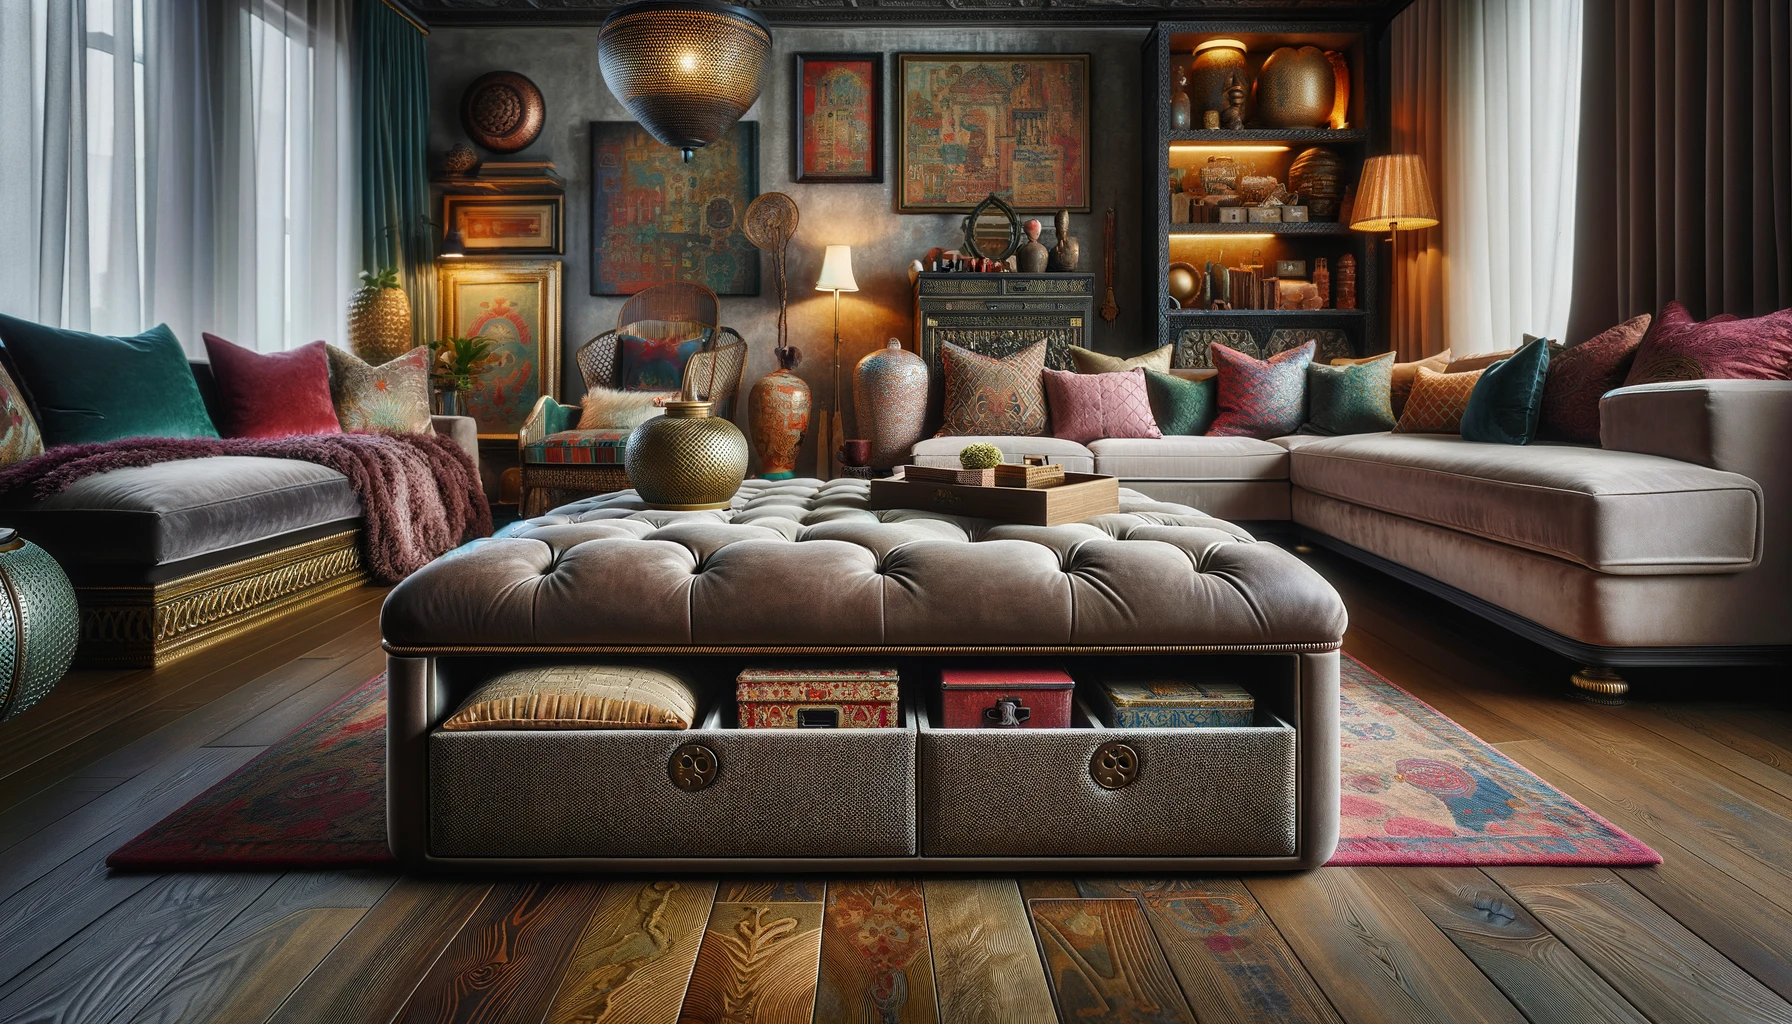 Elegant vintage living room interior design.